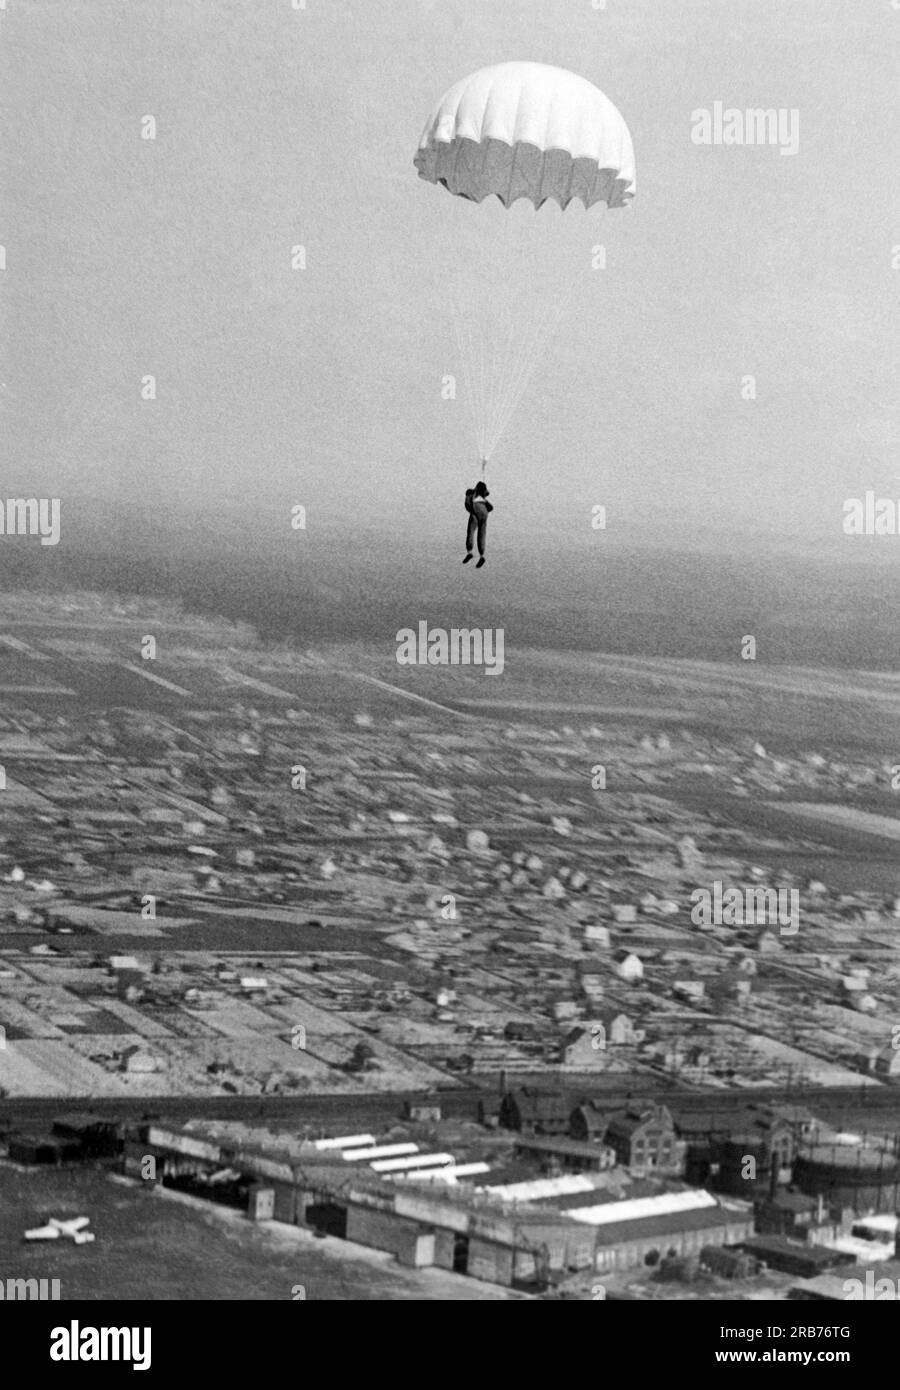 Deutschland: 24. Mai 1931 Willi Ruge ist bestrebt, die ersten Selbstporträts vom Fallschirm zu machen, wenn er aus einem Flugzeug springt. Hier, nachdem er mit dem Kopf zuerst aus dem Flugzeug gesprungen ist, hat sich sein Fallschirm vollständig geöffnet Stockfoto